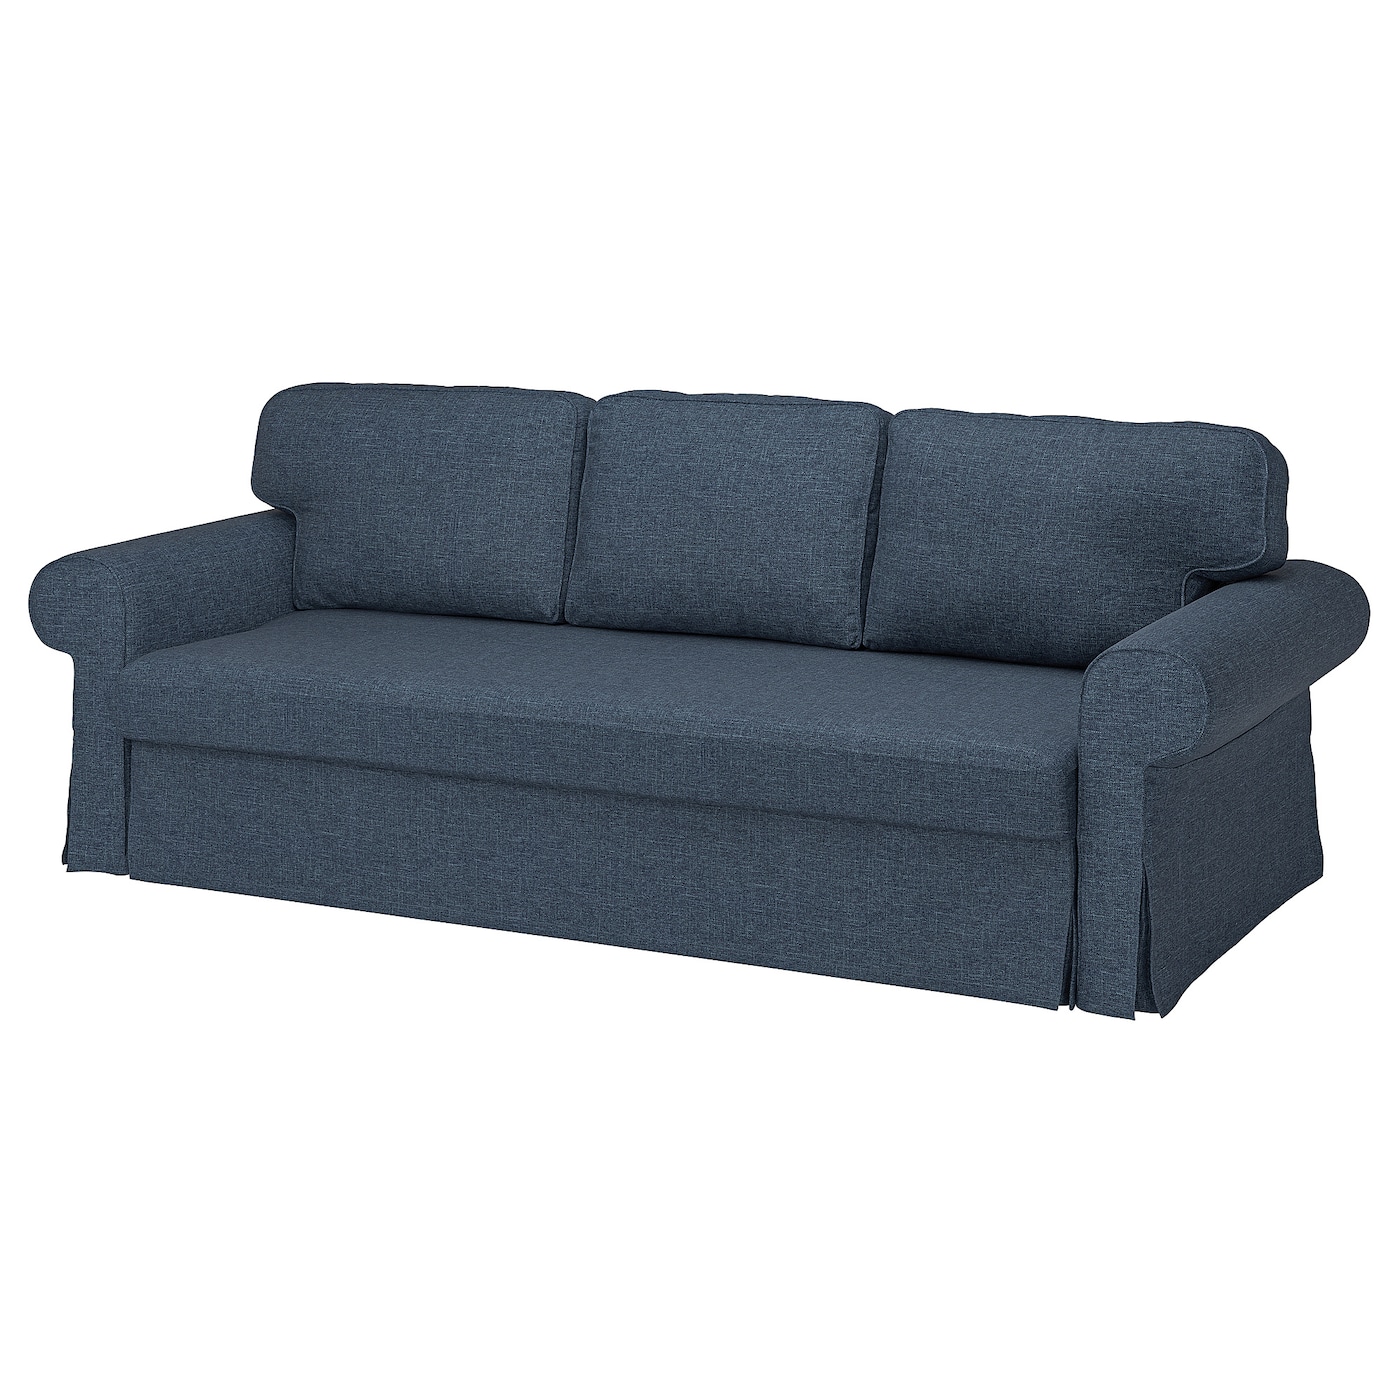 Чехол на 3-местный диван - VRETSTORP IKEA/ ВРЕТСТОРП  ИКАЕ,   синий